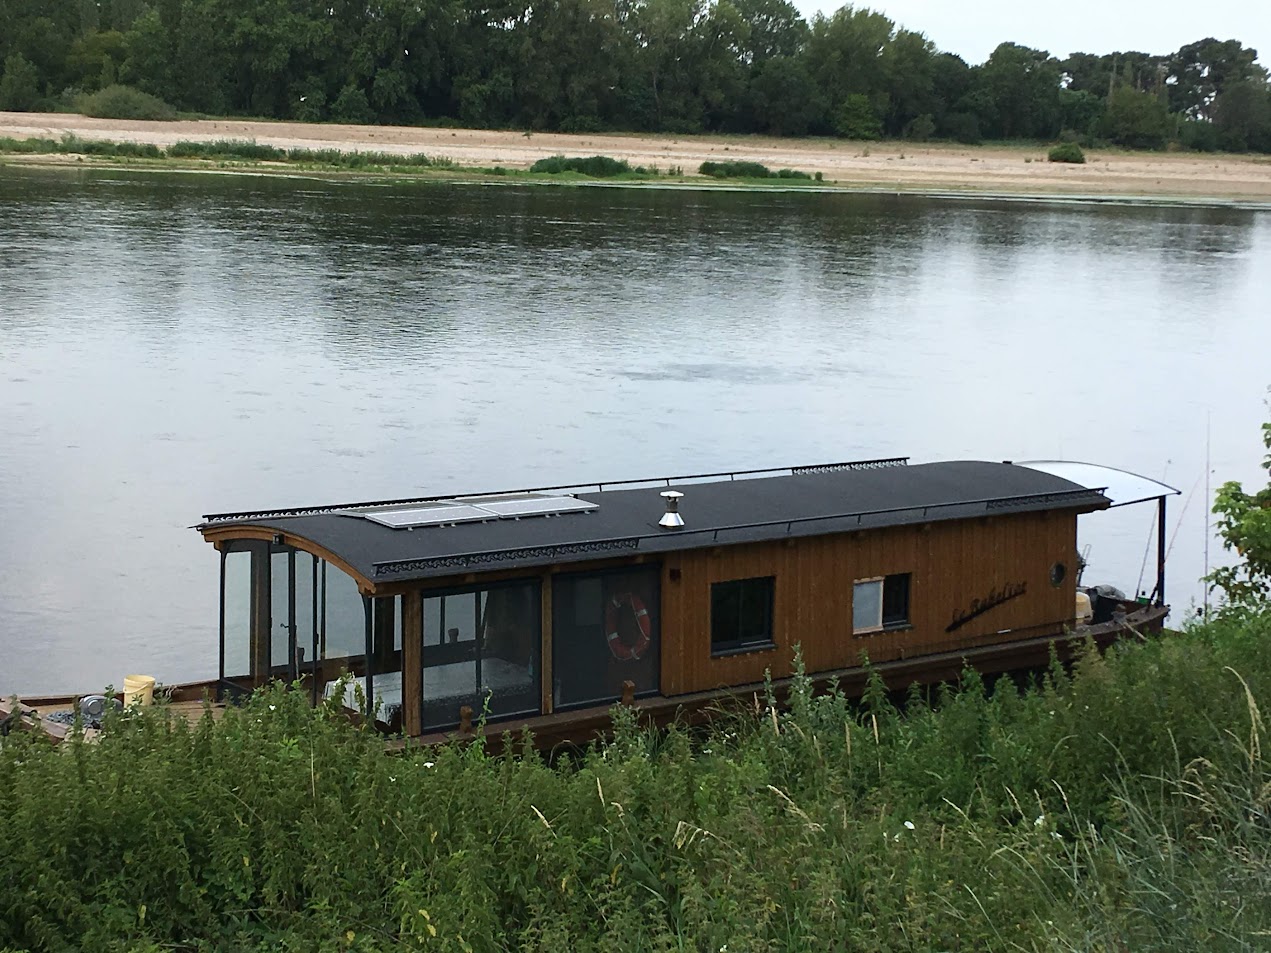 Maison flottante sur fleuve calme.